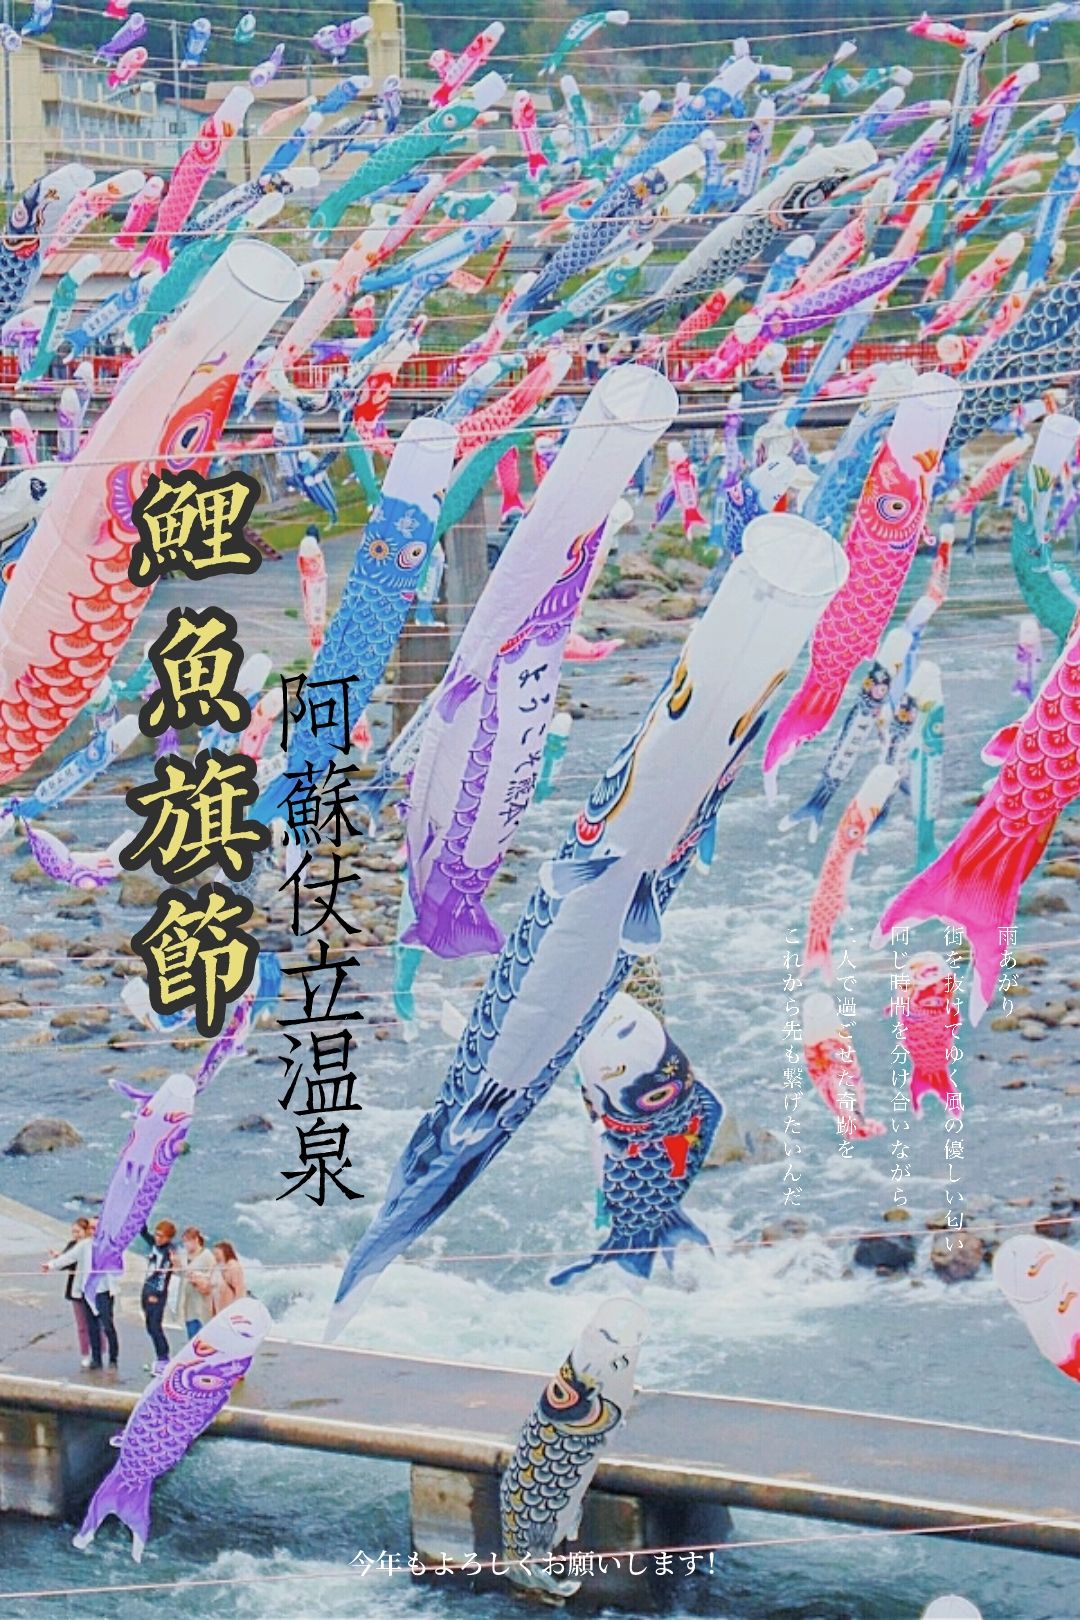 日本九州古老温泉乡·阿苏仗立温泉鲤鱼旗节